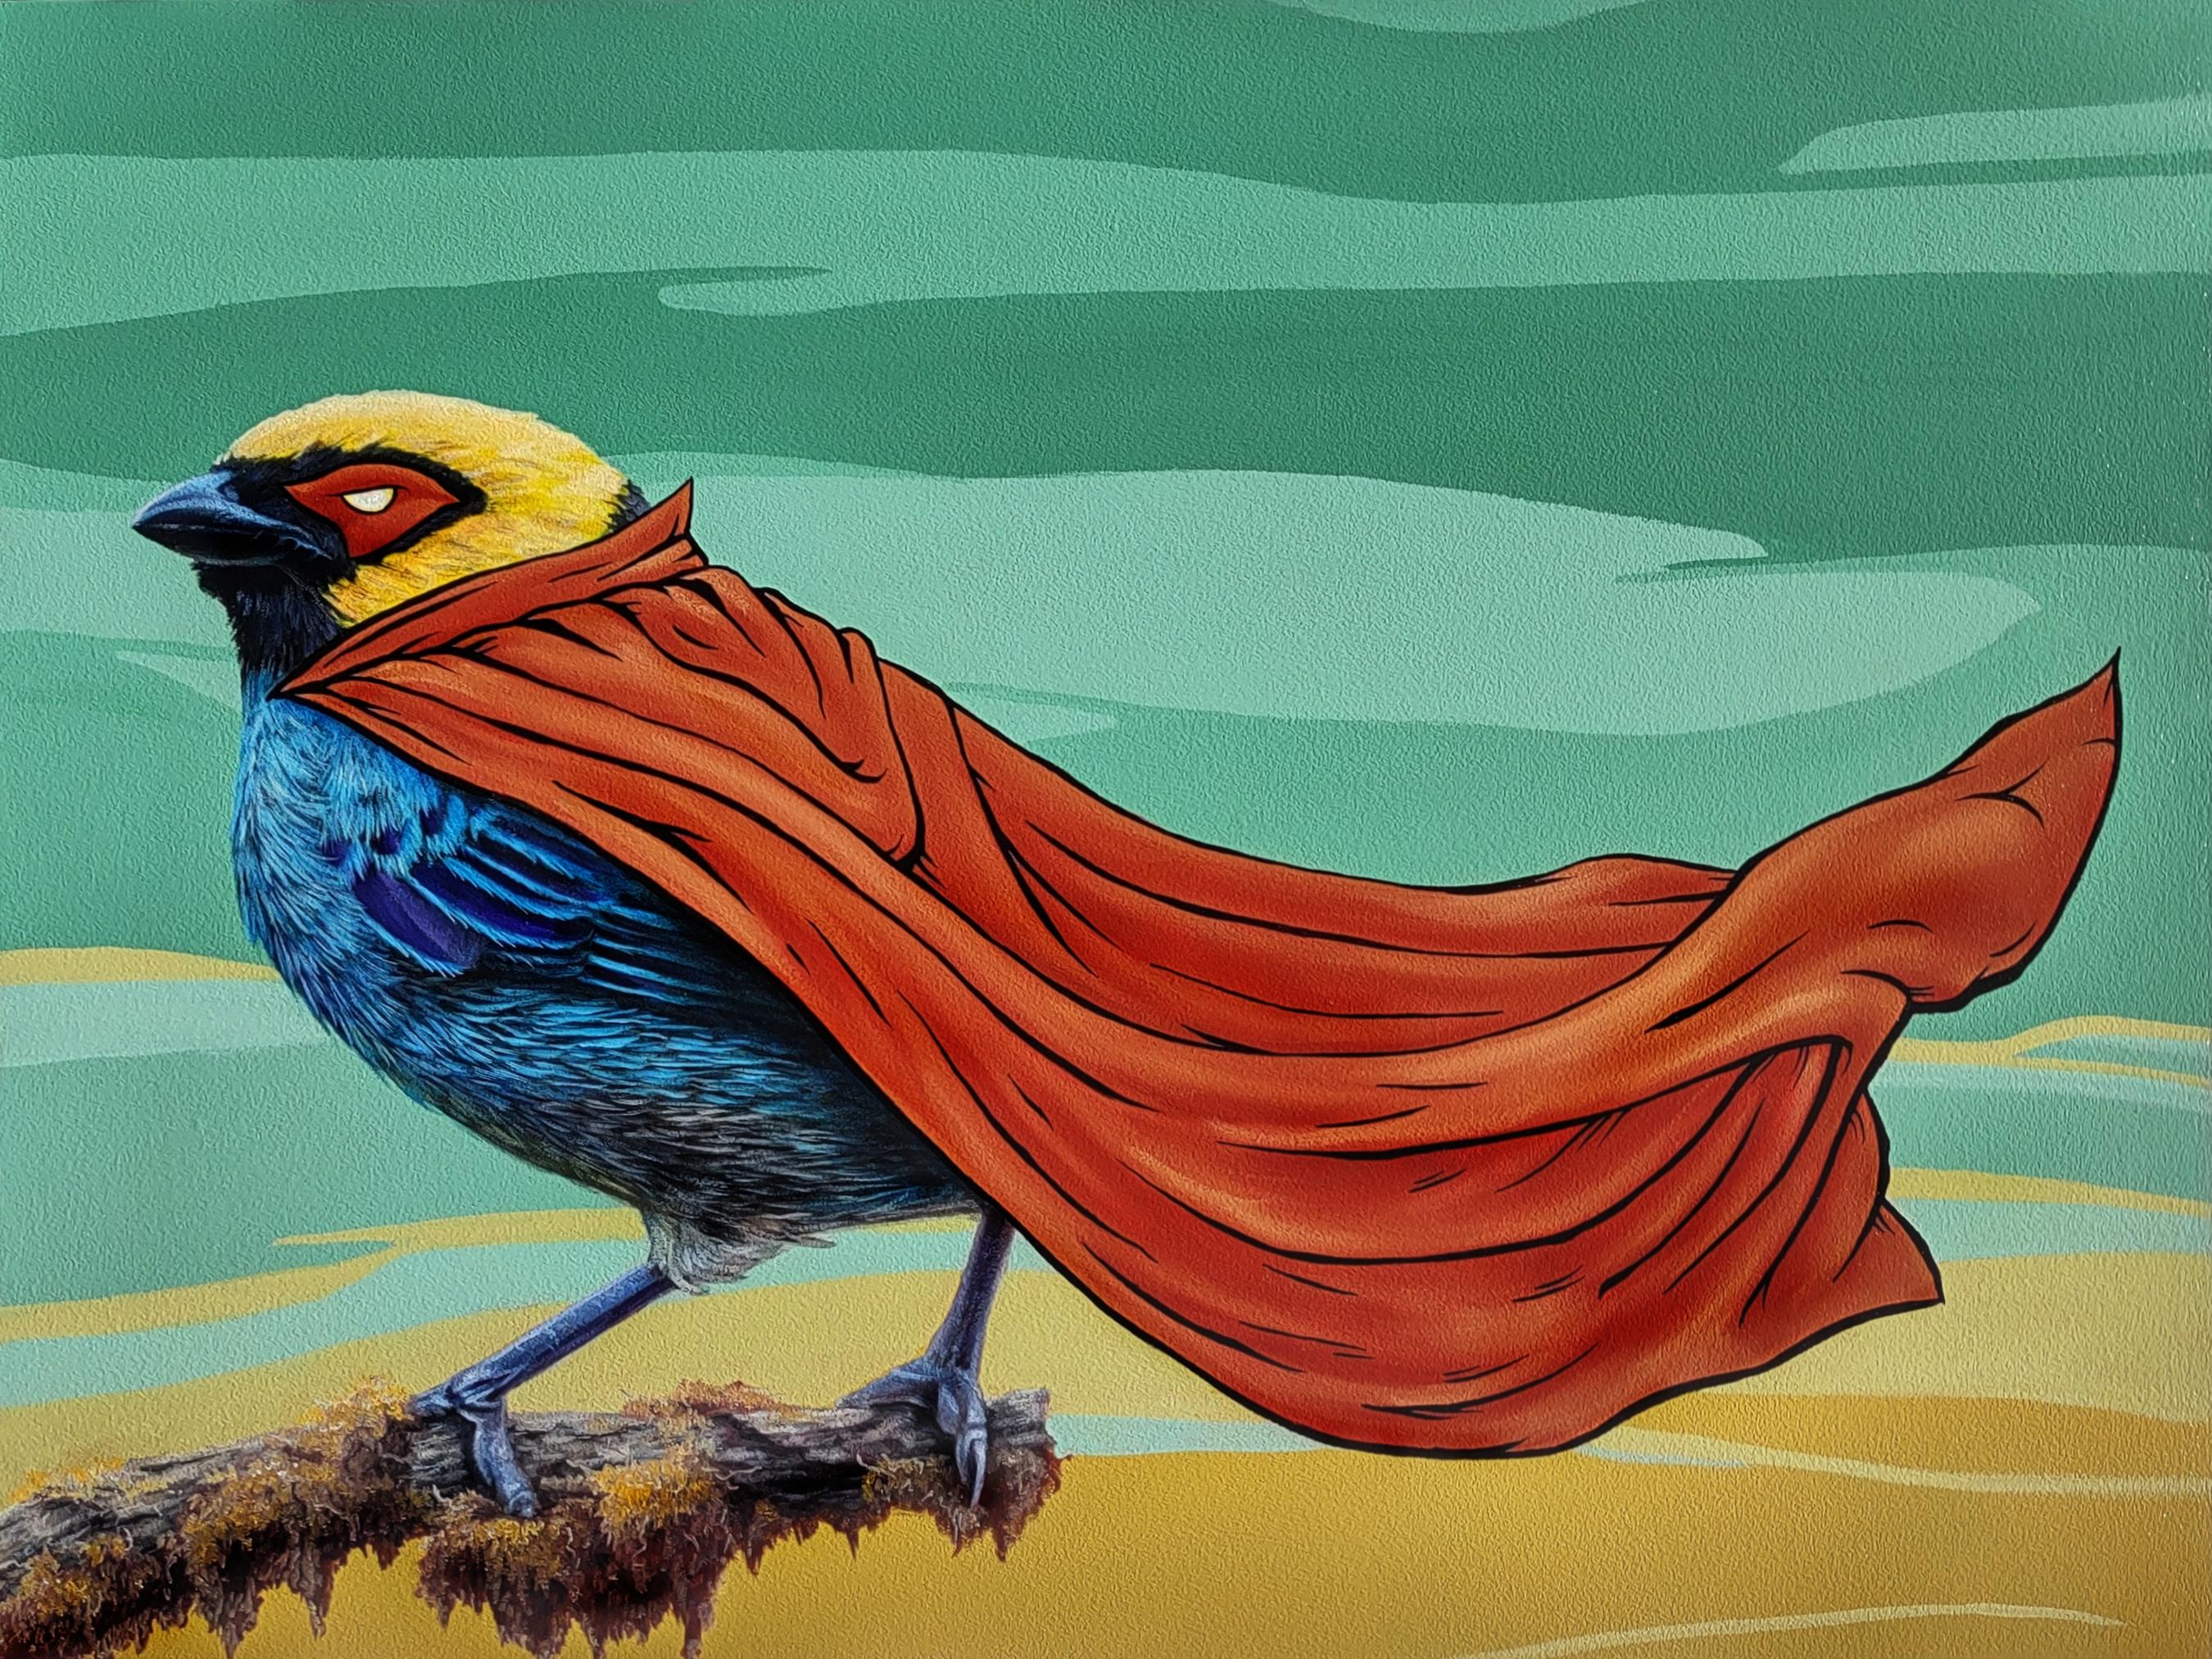 Animal Painting 3rd Version (Ben Patterson) - « Masks We Wear, For Anonymity », peinture à l'huile d'oiseau avec cape rouge